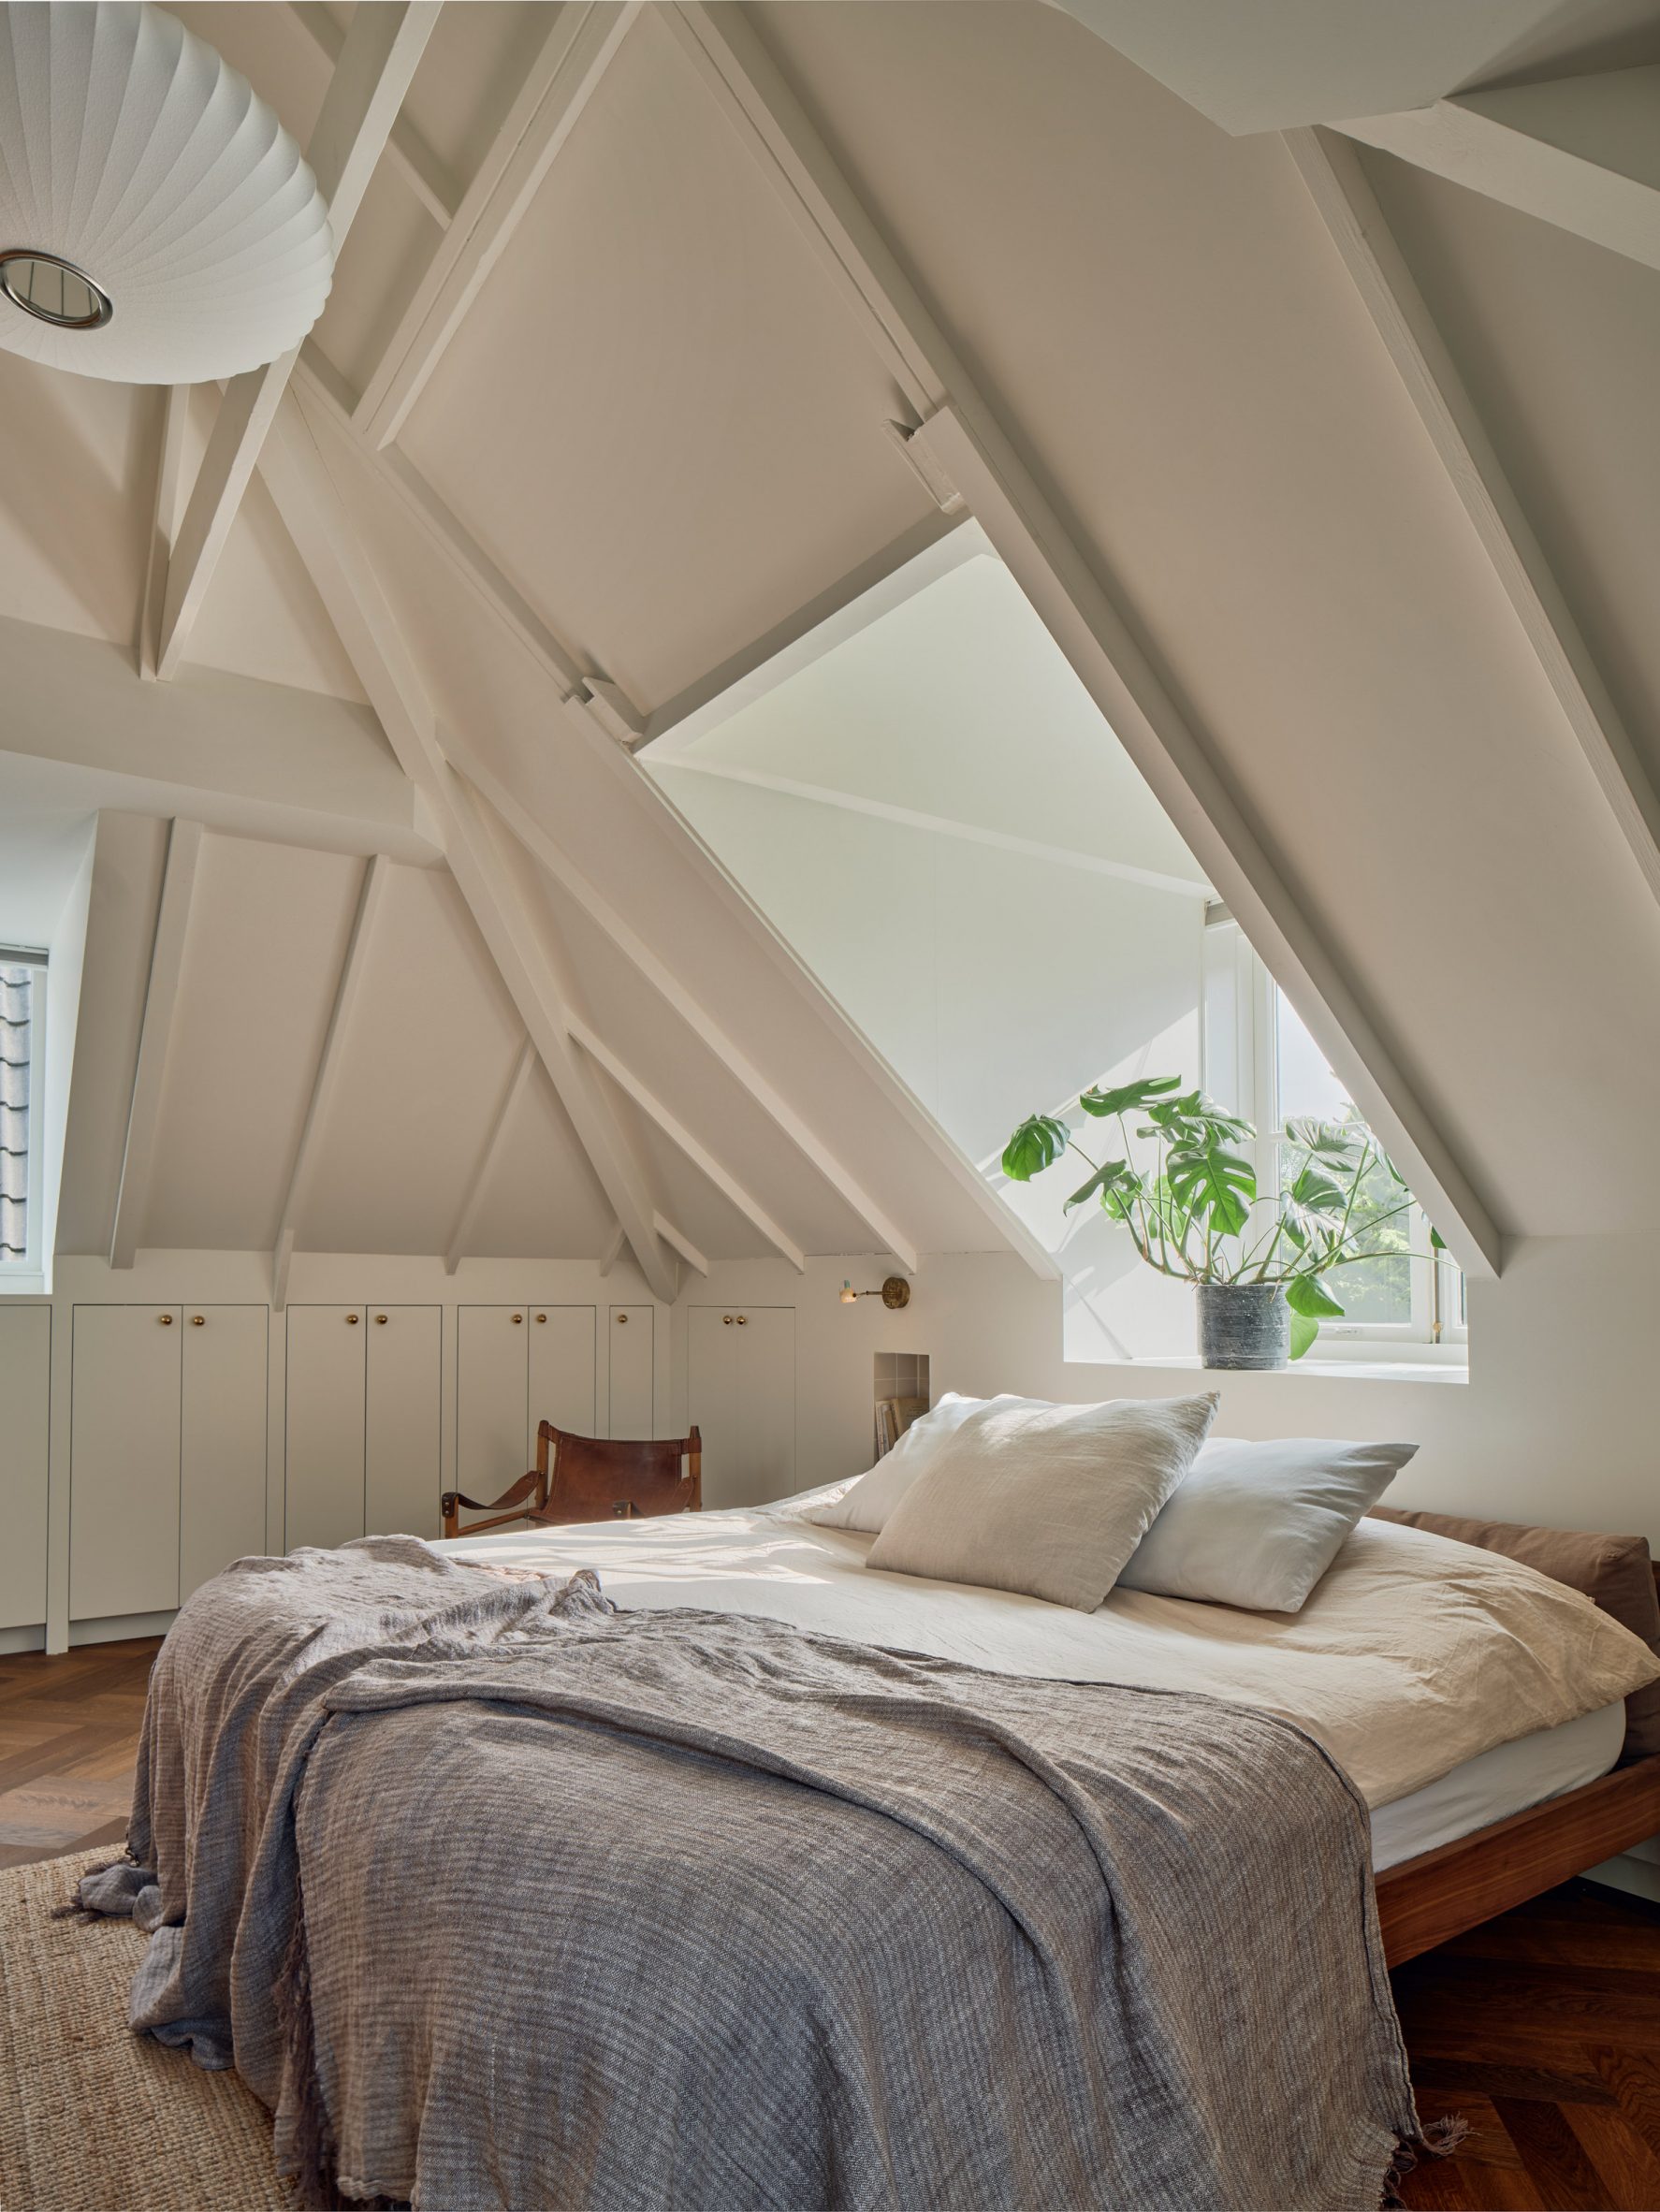 Bedroom in gabled roof designed by Studio Modijefsky